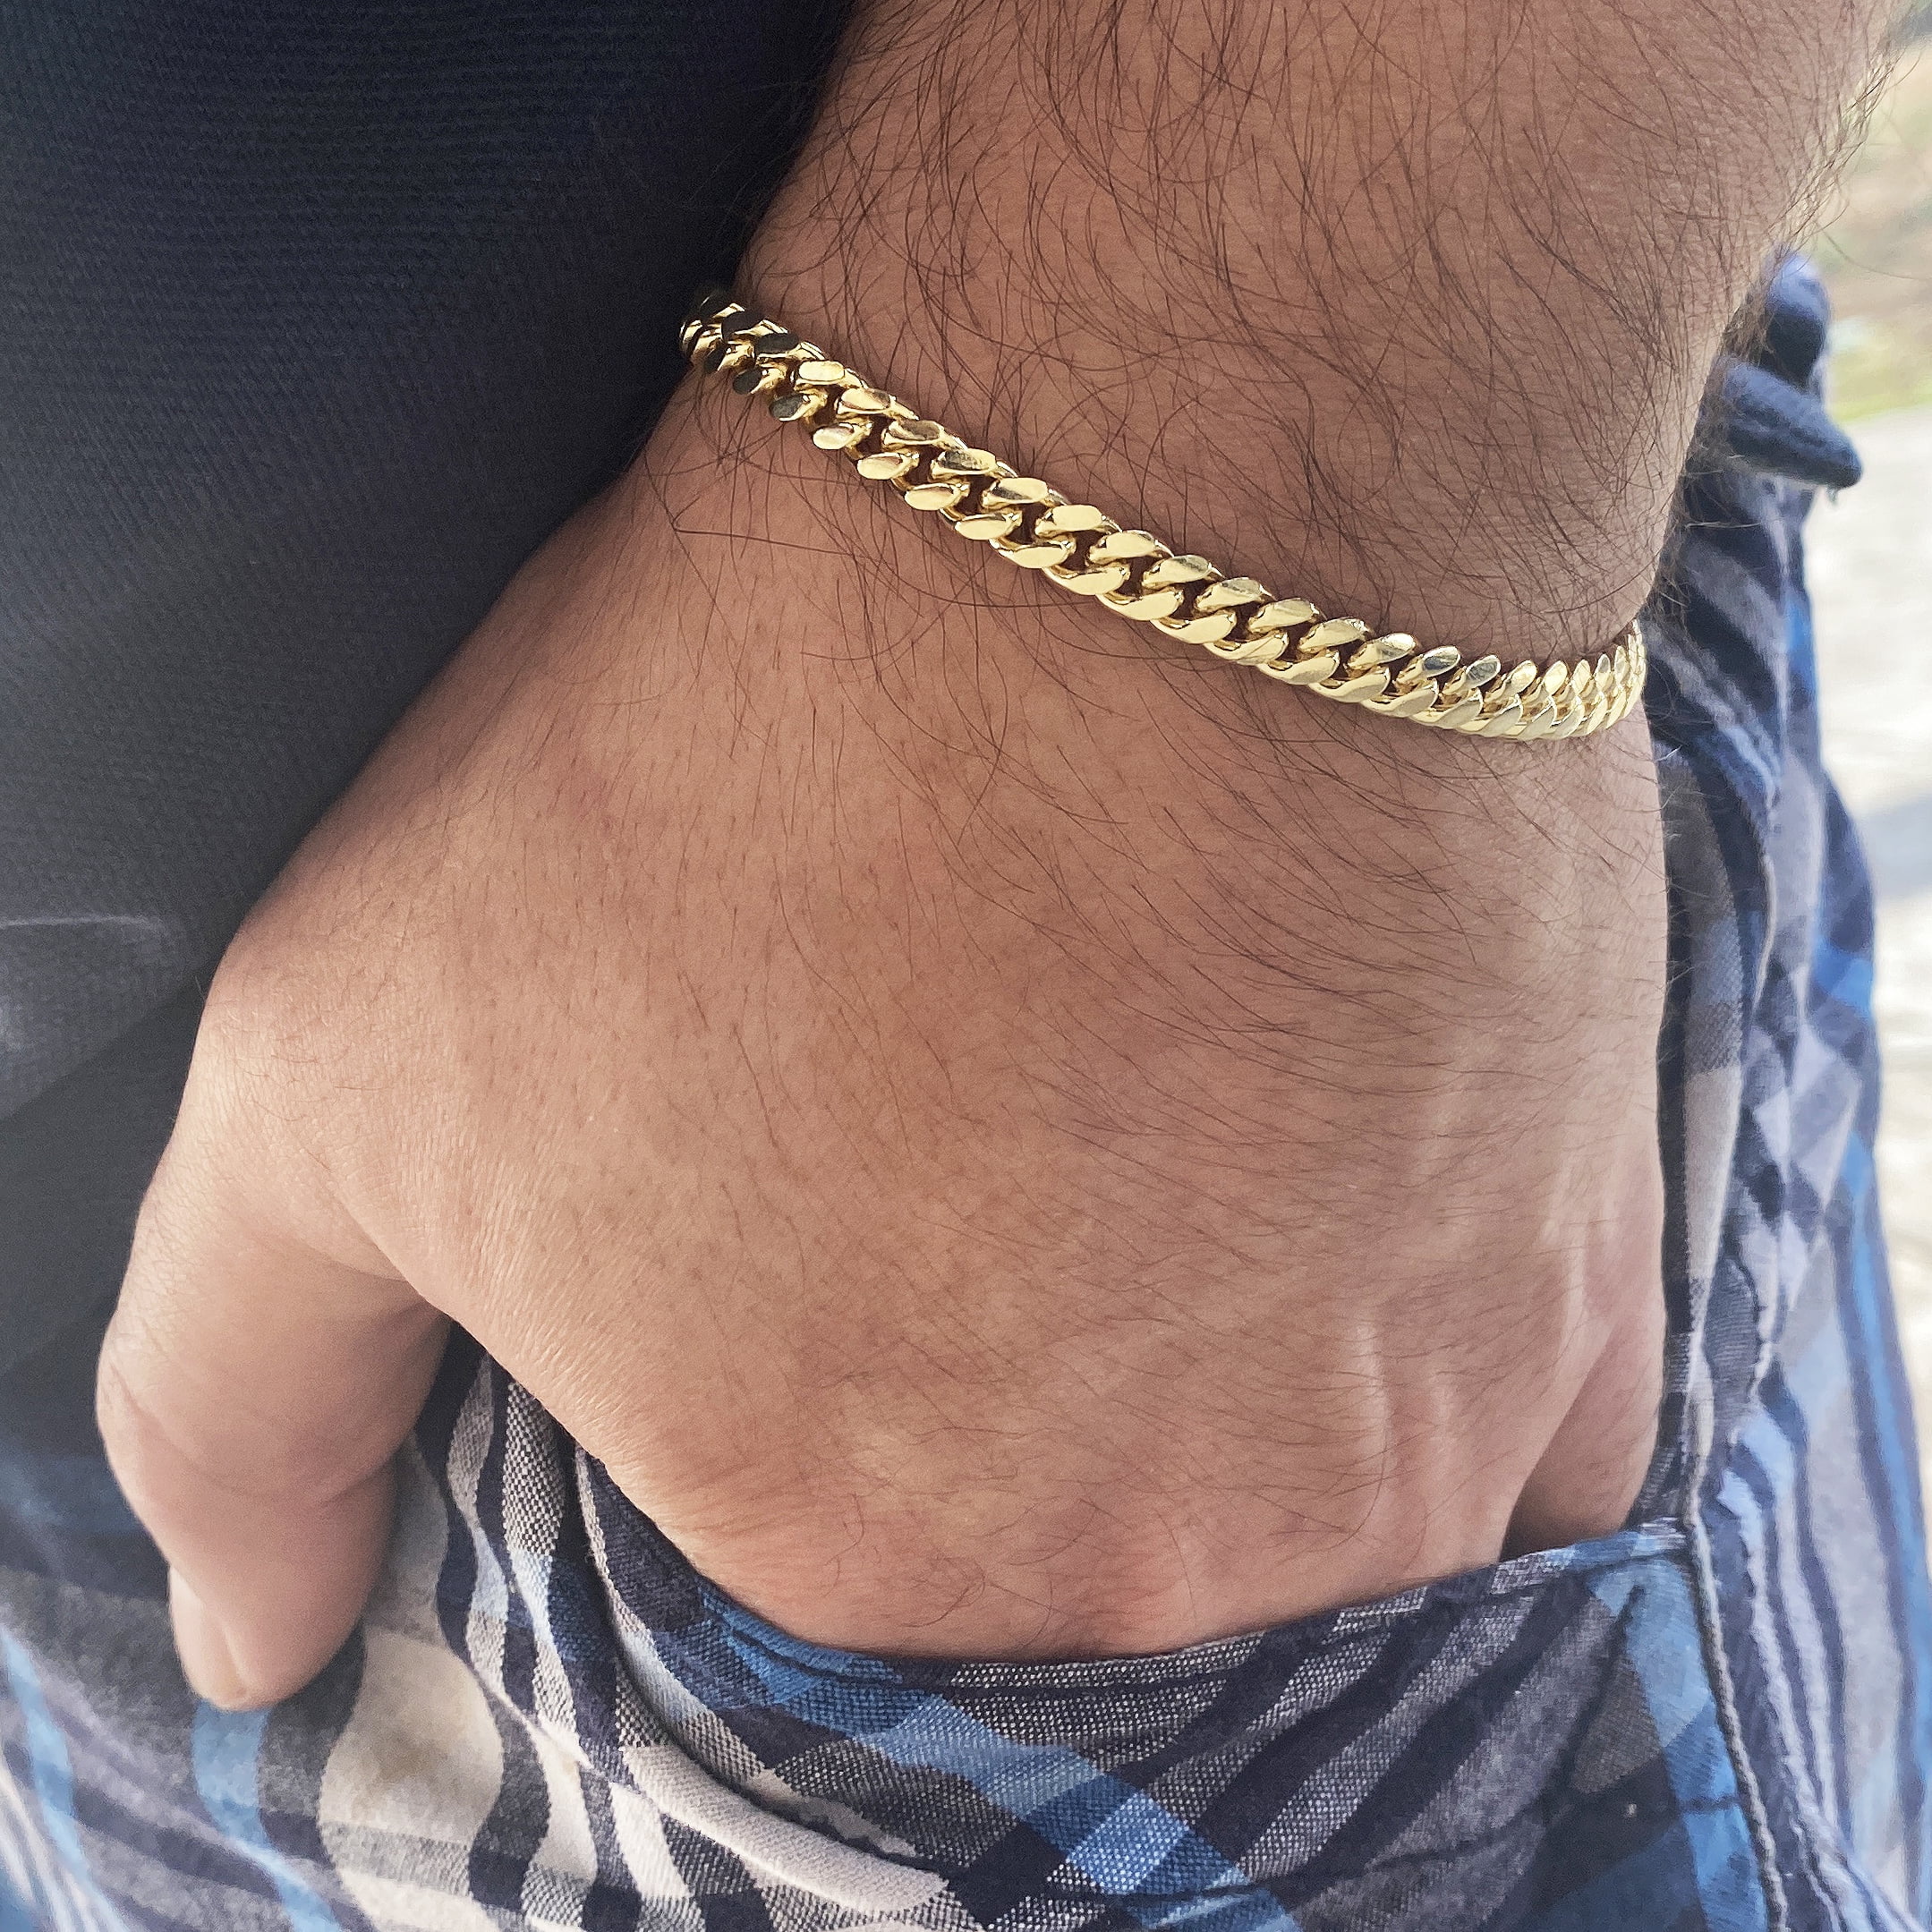 Men's Bracelet, Dainty Men's Gold Bracelets, Simple Men's Chain Bracelet, Men  Jewelry, Boyfriend Gift, Husband Gift, Dad Gift, Gift for Him - Etsy | Mens  chain bracelet, Stainless steel bracelet men, Mens